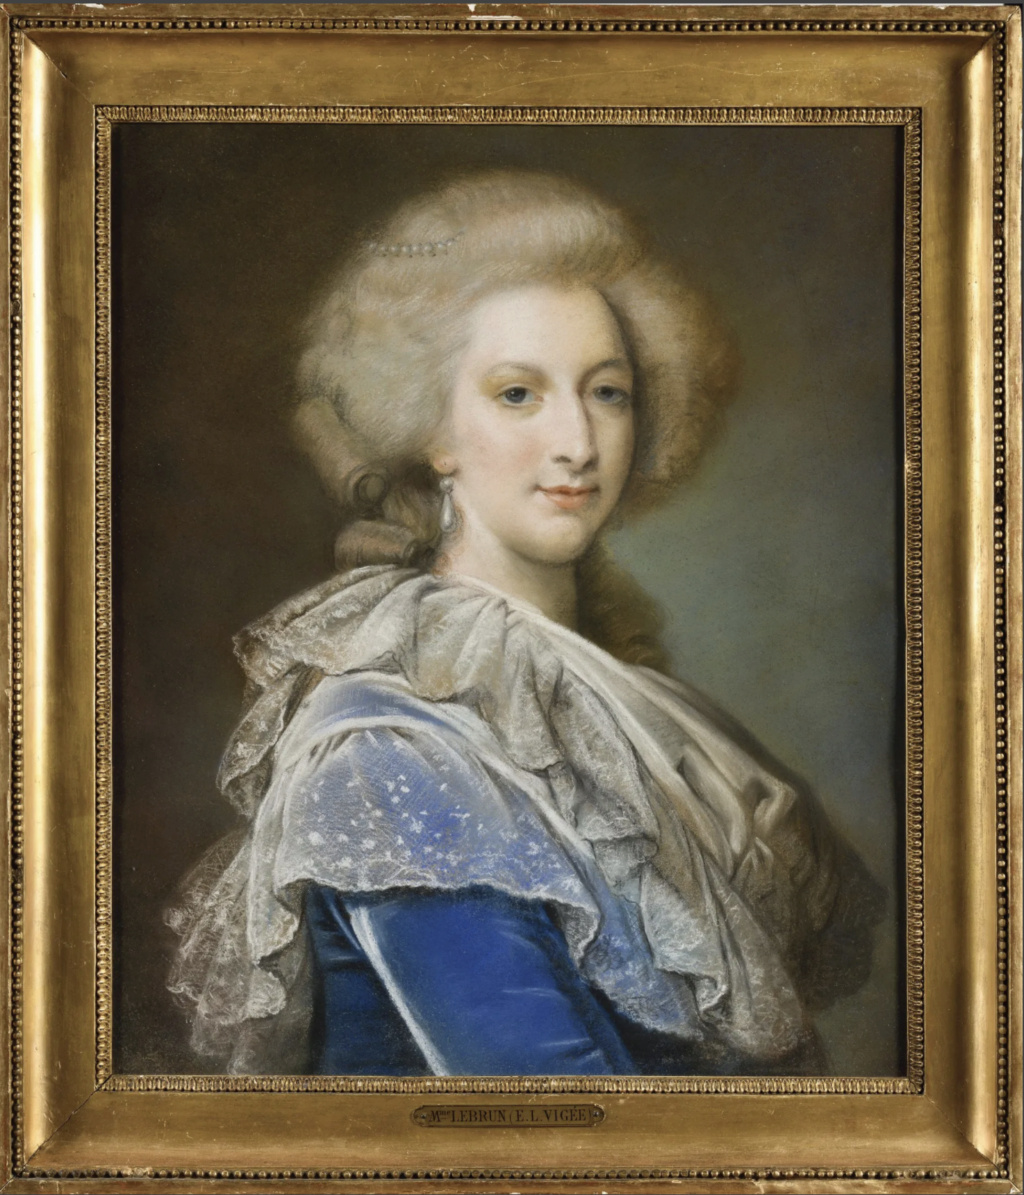 Portraits de Marie-Antoinette d'après Elisabeth Vigée Le Bun ?  - Page 2 Capt3295